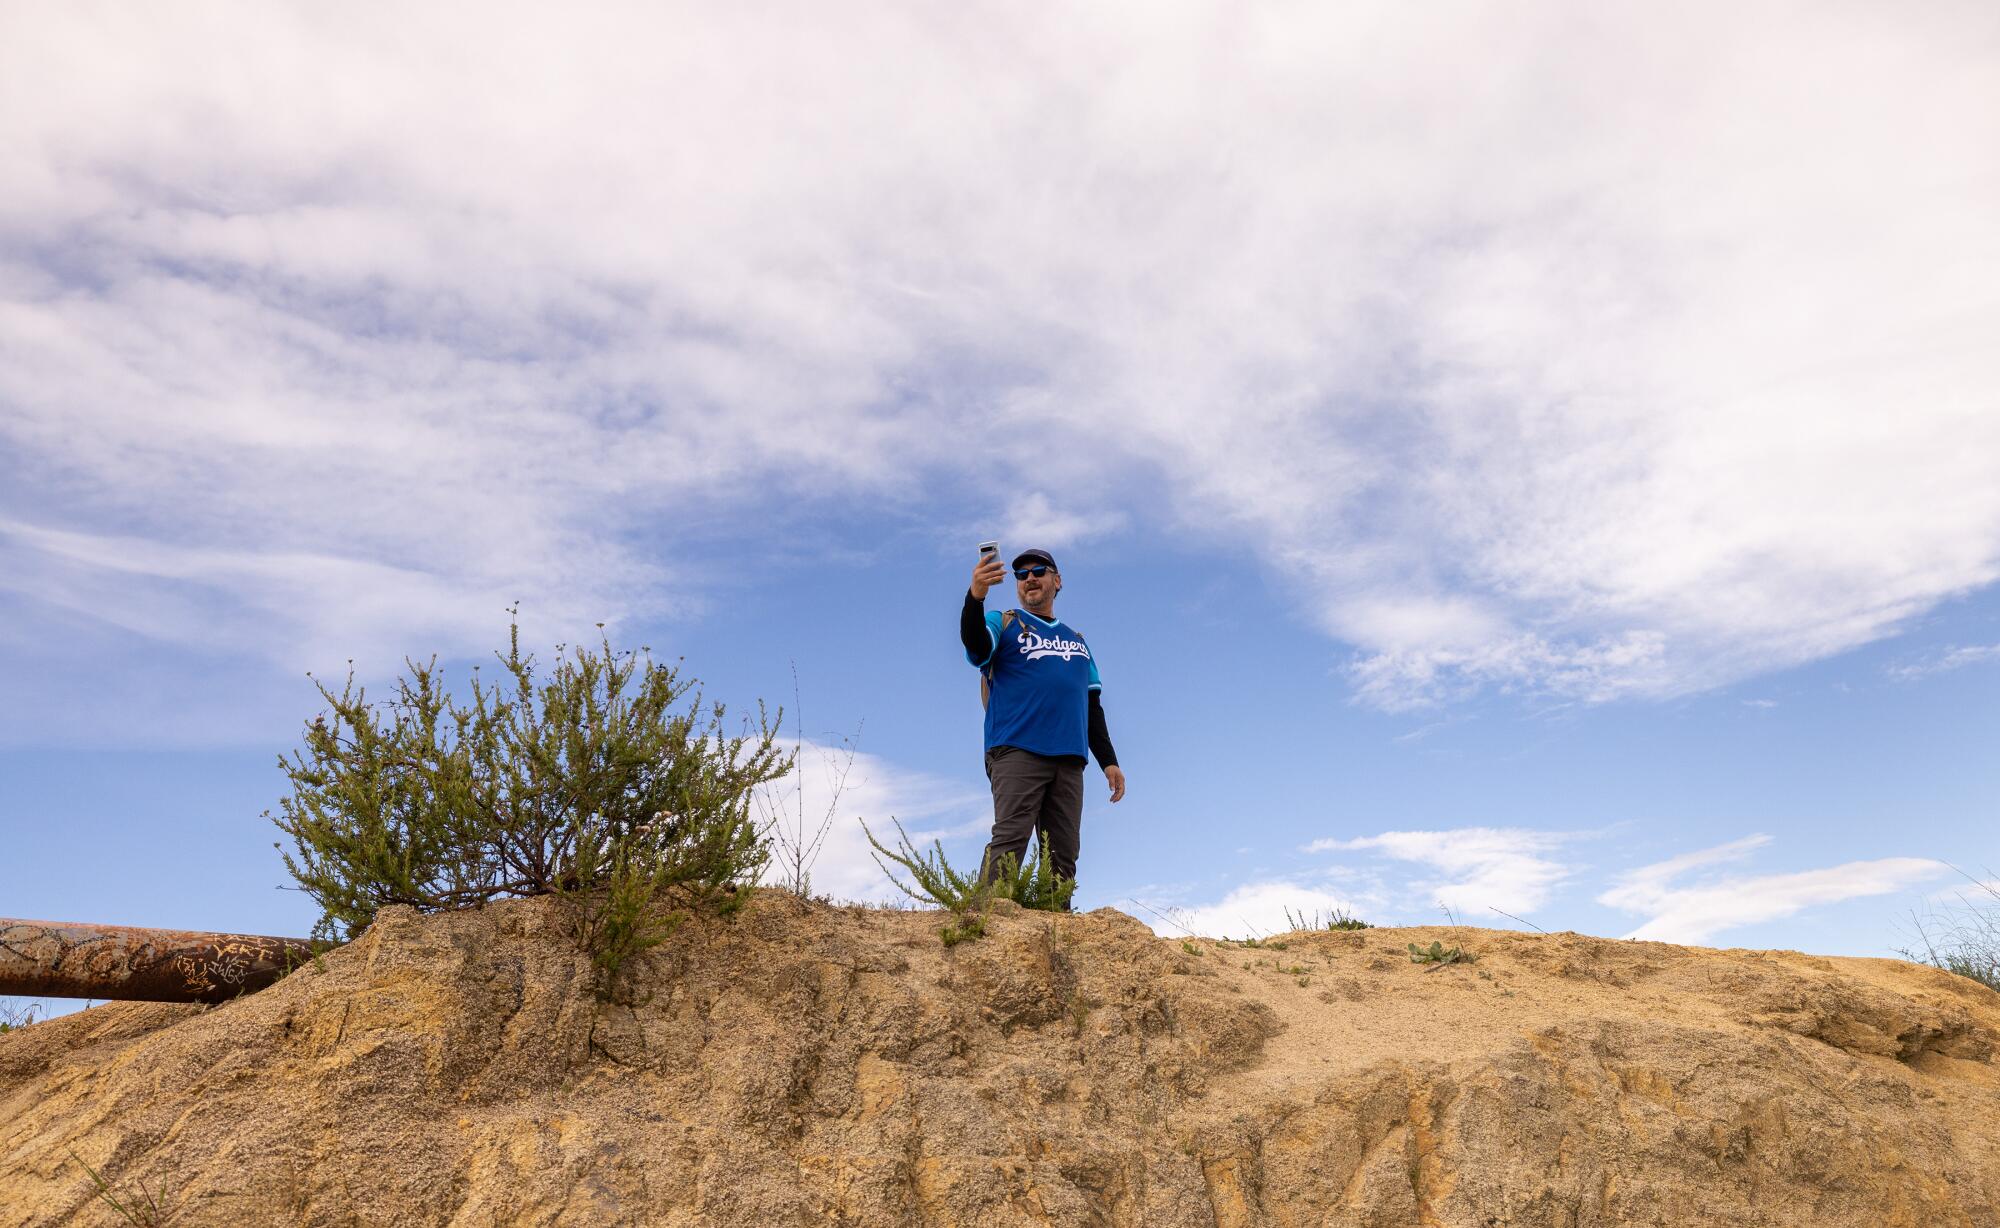 Турист поднялся наверх, чтобы увидеть с высоты птичьего полета участников Dodgers Blue Hiking Crew.